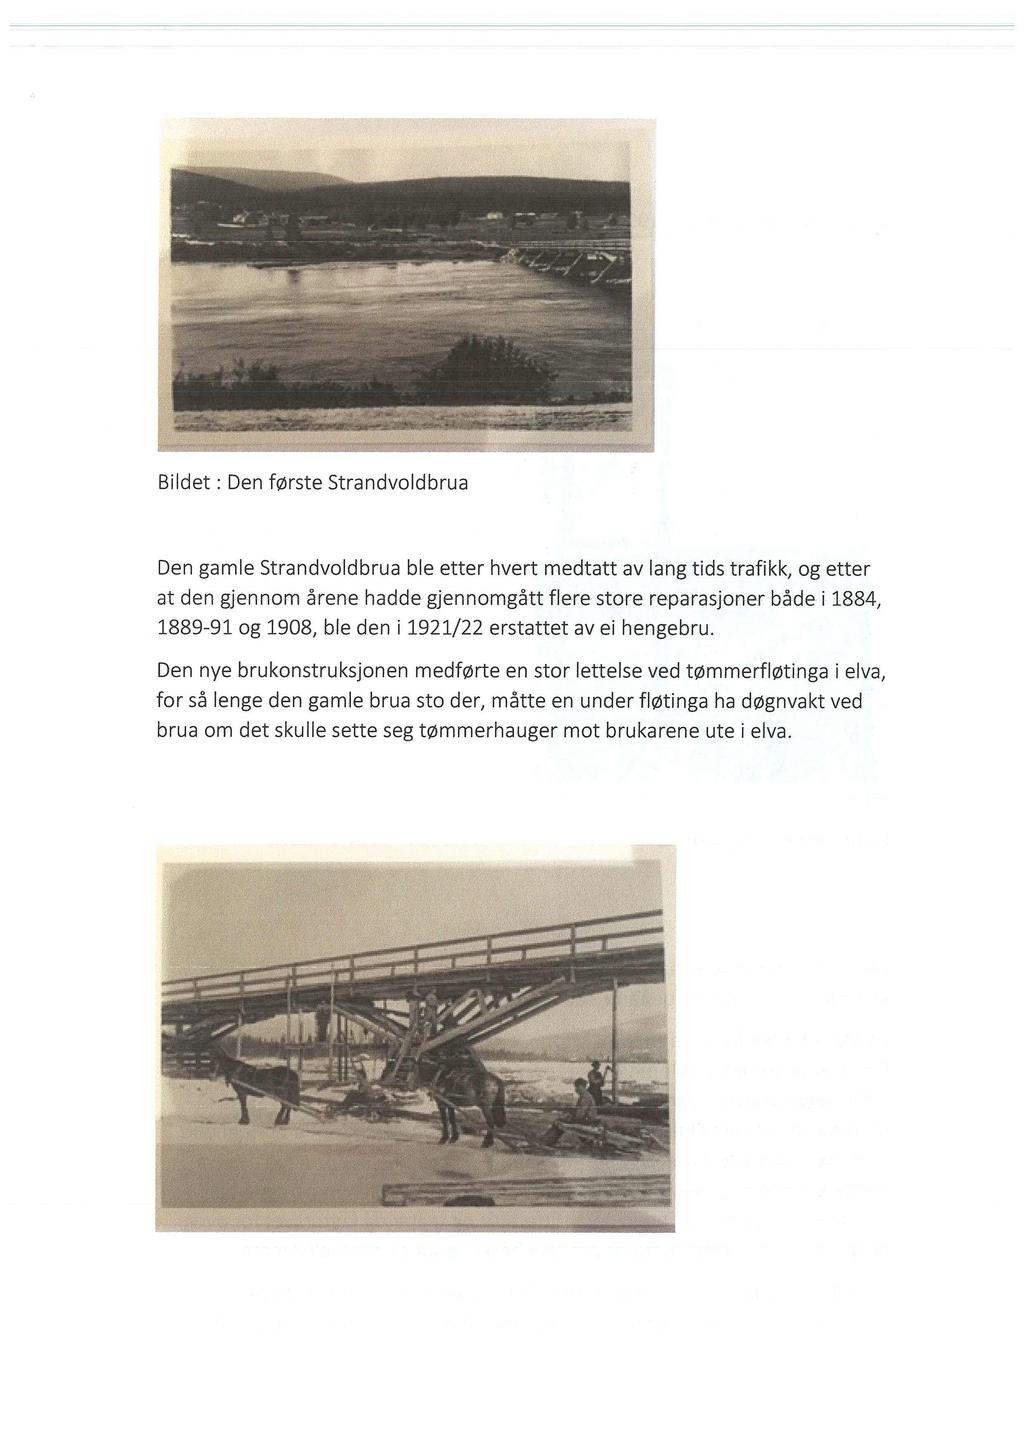 Den gamle Strandvoldbrua ble etter hvert medtatt avlang tids trafikk, og etter at den gjennom årene hadde gjennomgått flere store reparasjoner både i 1884, 1889-91 og 1908, ble den i 1921/22